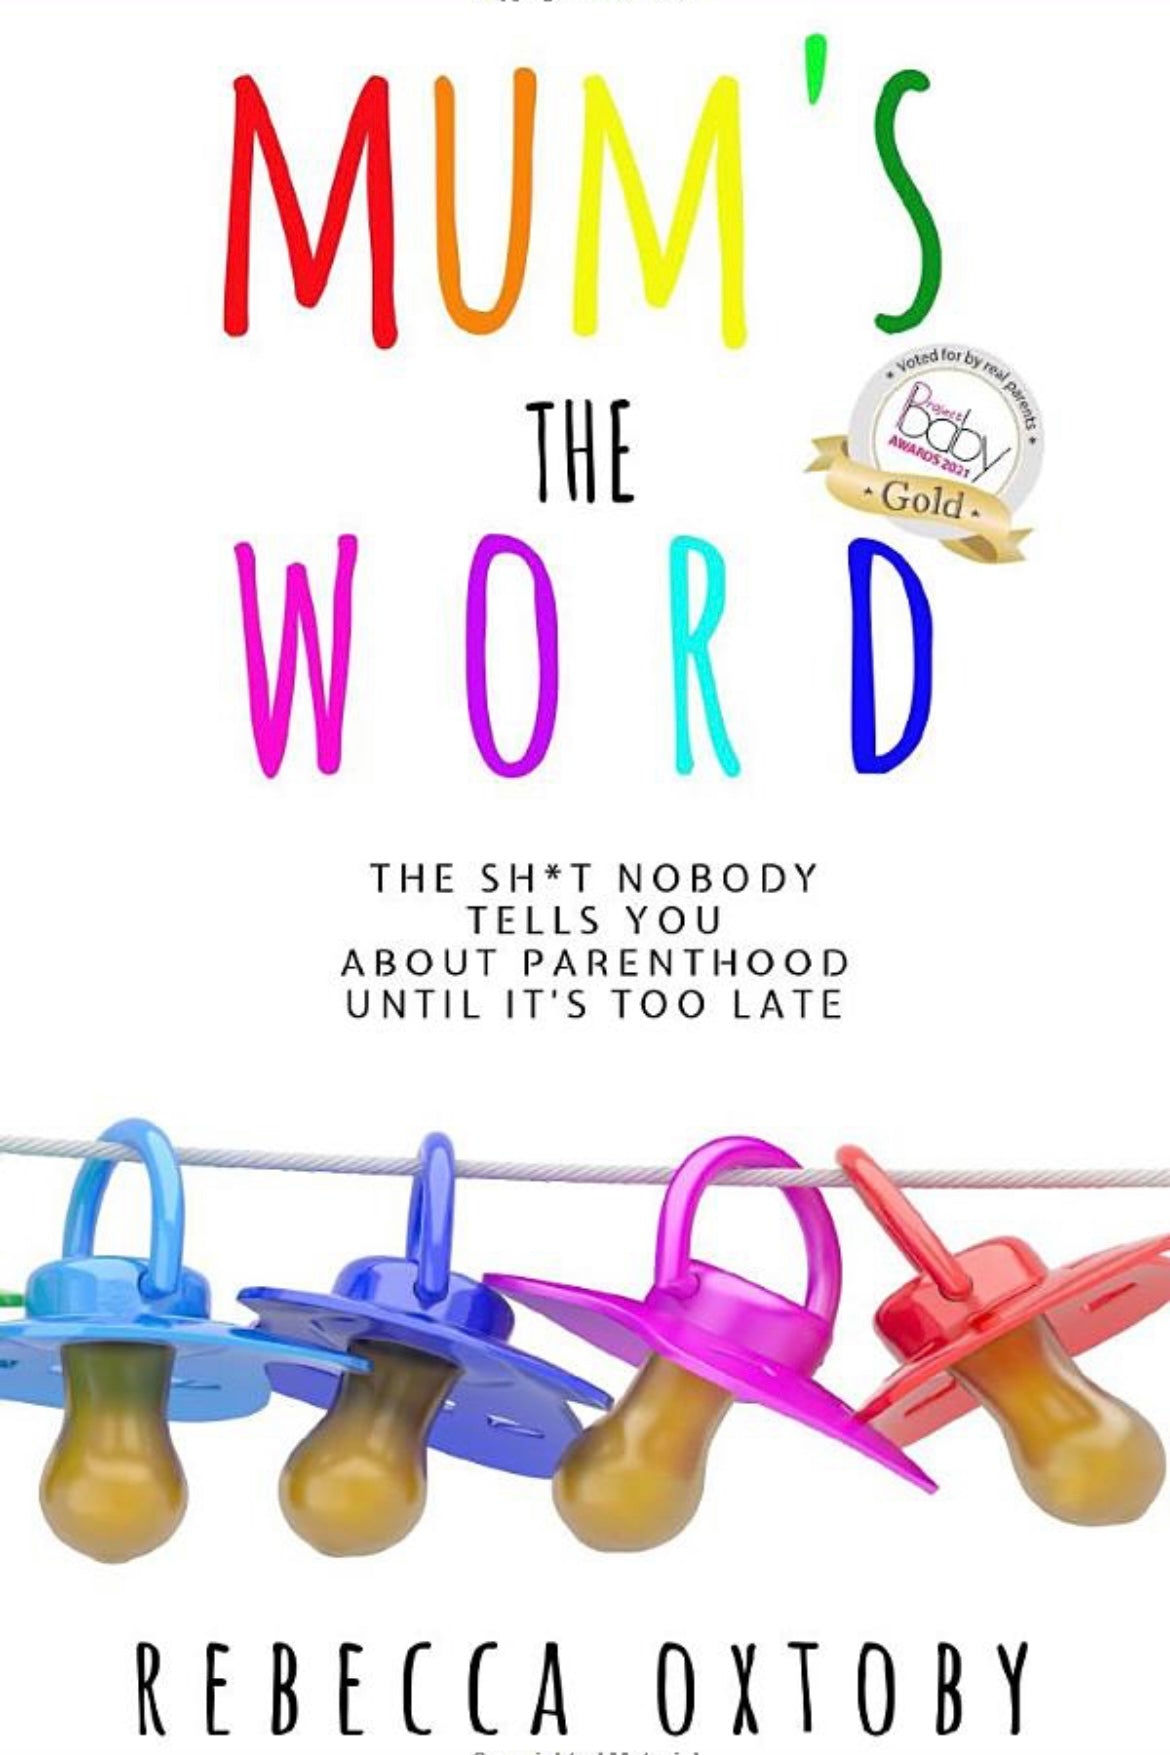 Mum’s the Word